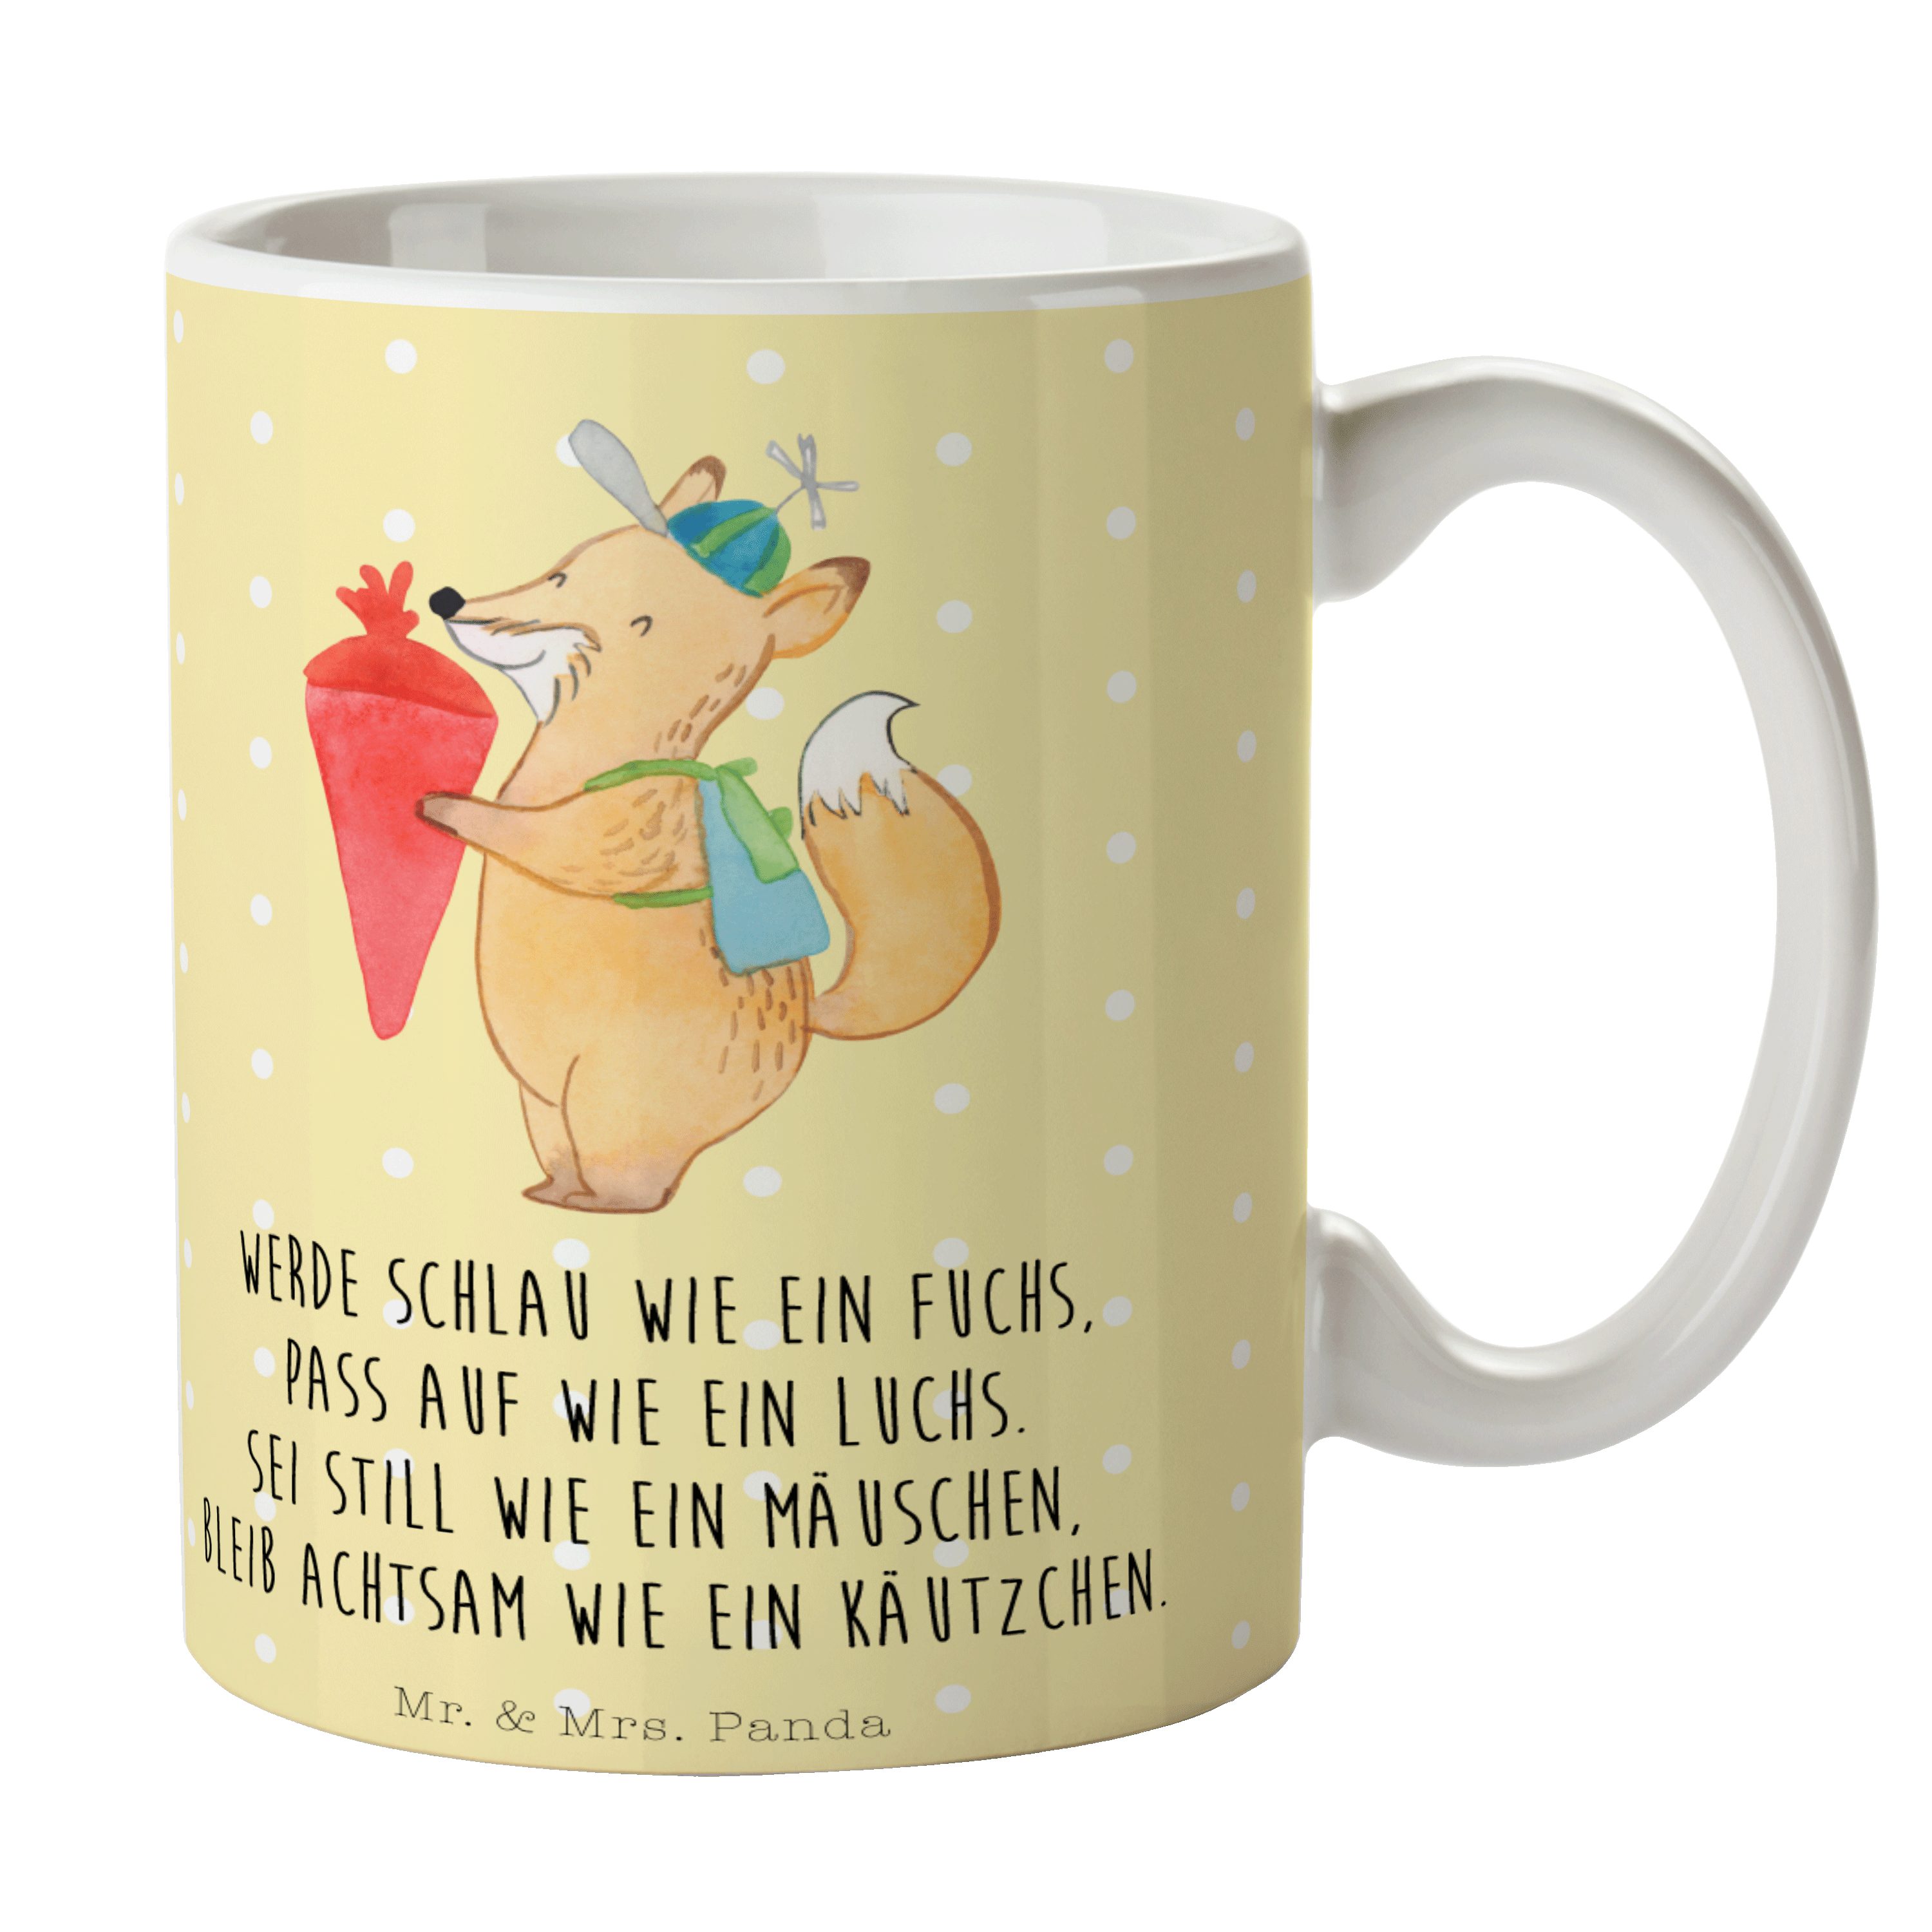 Mr. & Mrs. Panda Tasse Fuchs Schulkind - Gelb Pastell - Geschenk, Gute Laune, Tiere, Tasse S, Keramik